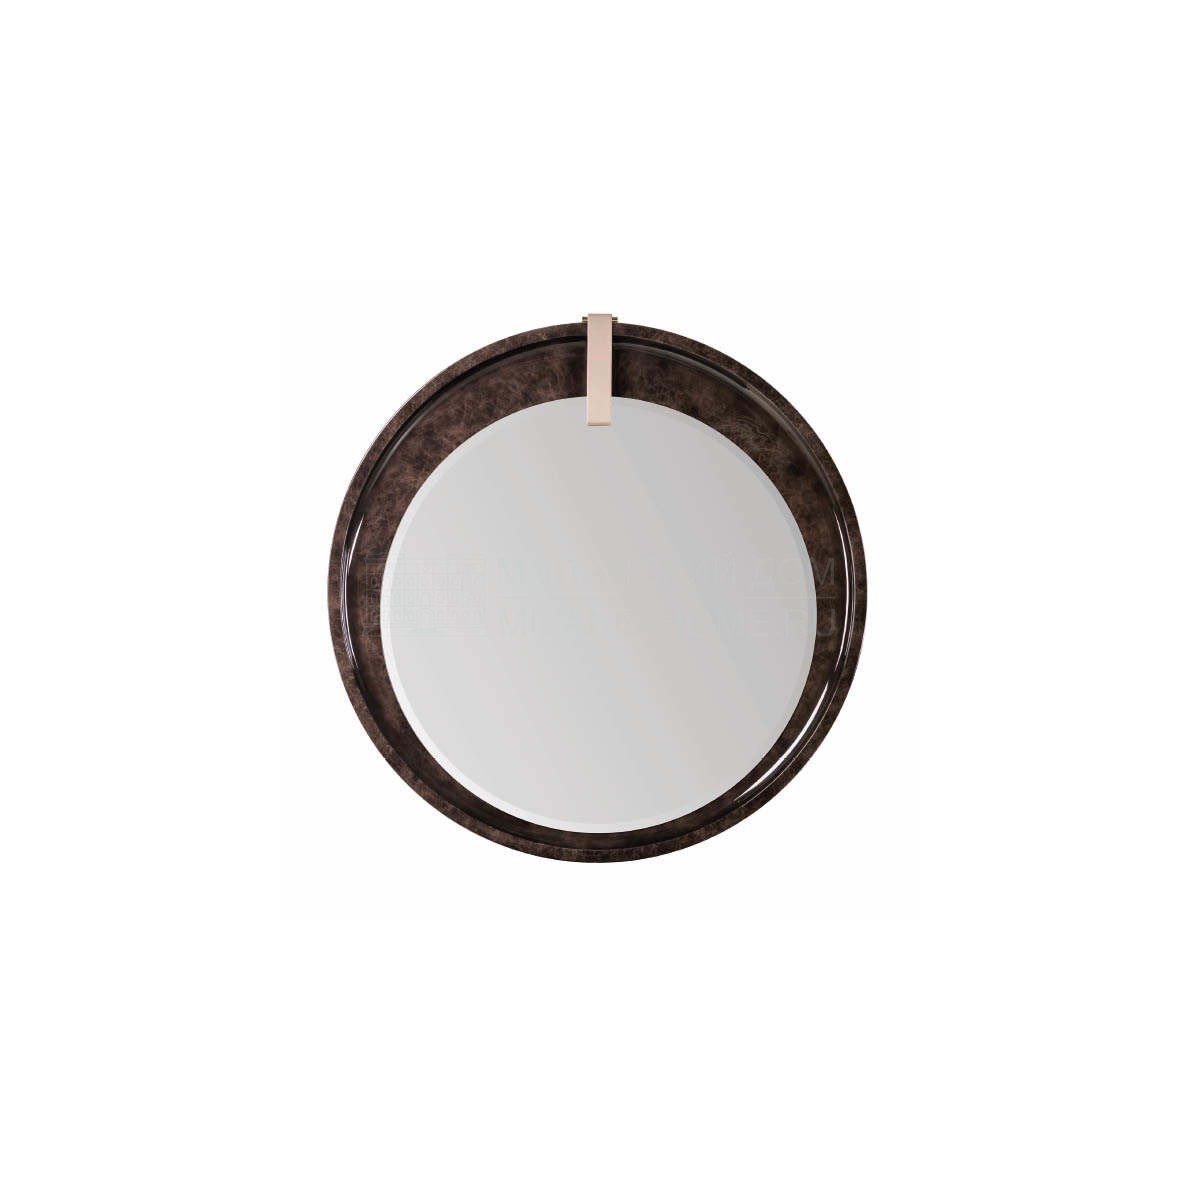 Зеркало настенное Eclipse round mirror из Италии фабрики TURRI